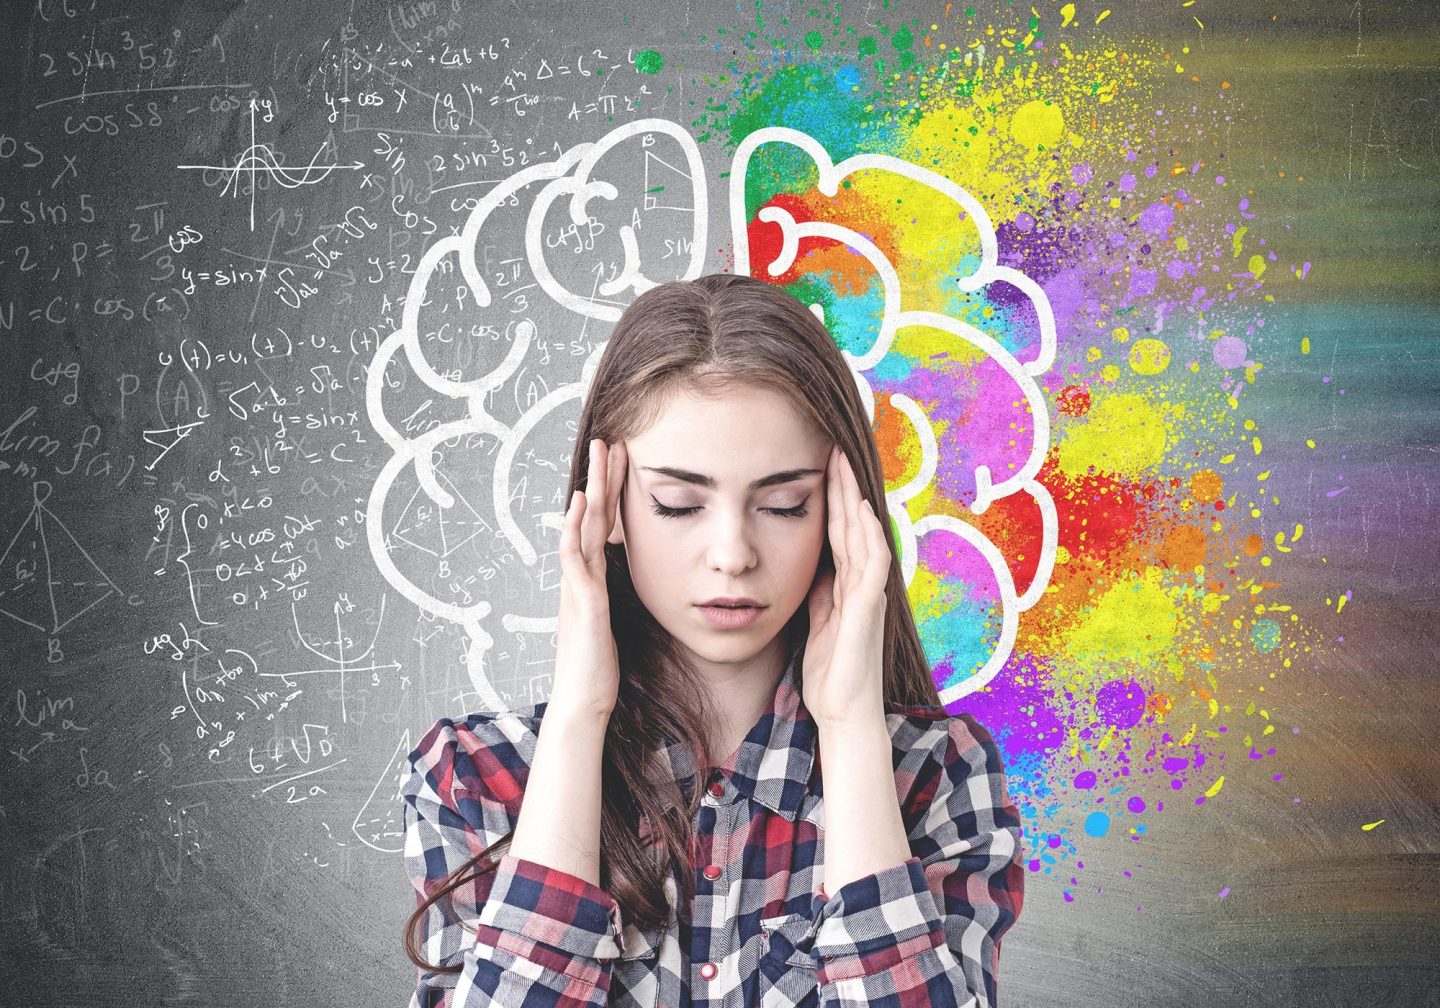 بعض أنواع التوتر مفيدة لوظائف الدماغ وتقلل مخاطر الإصابة بالأمراض العقلية!